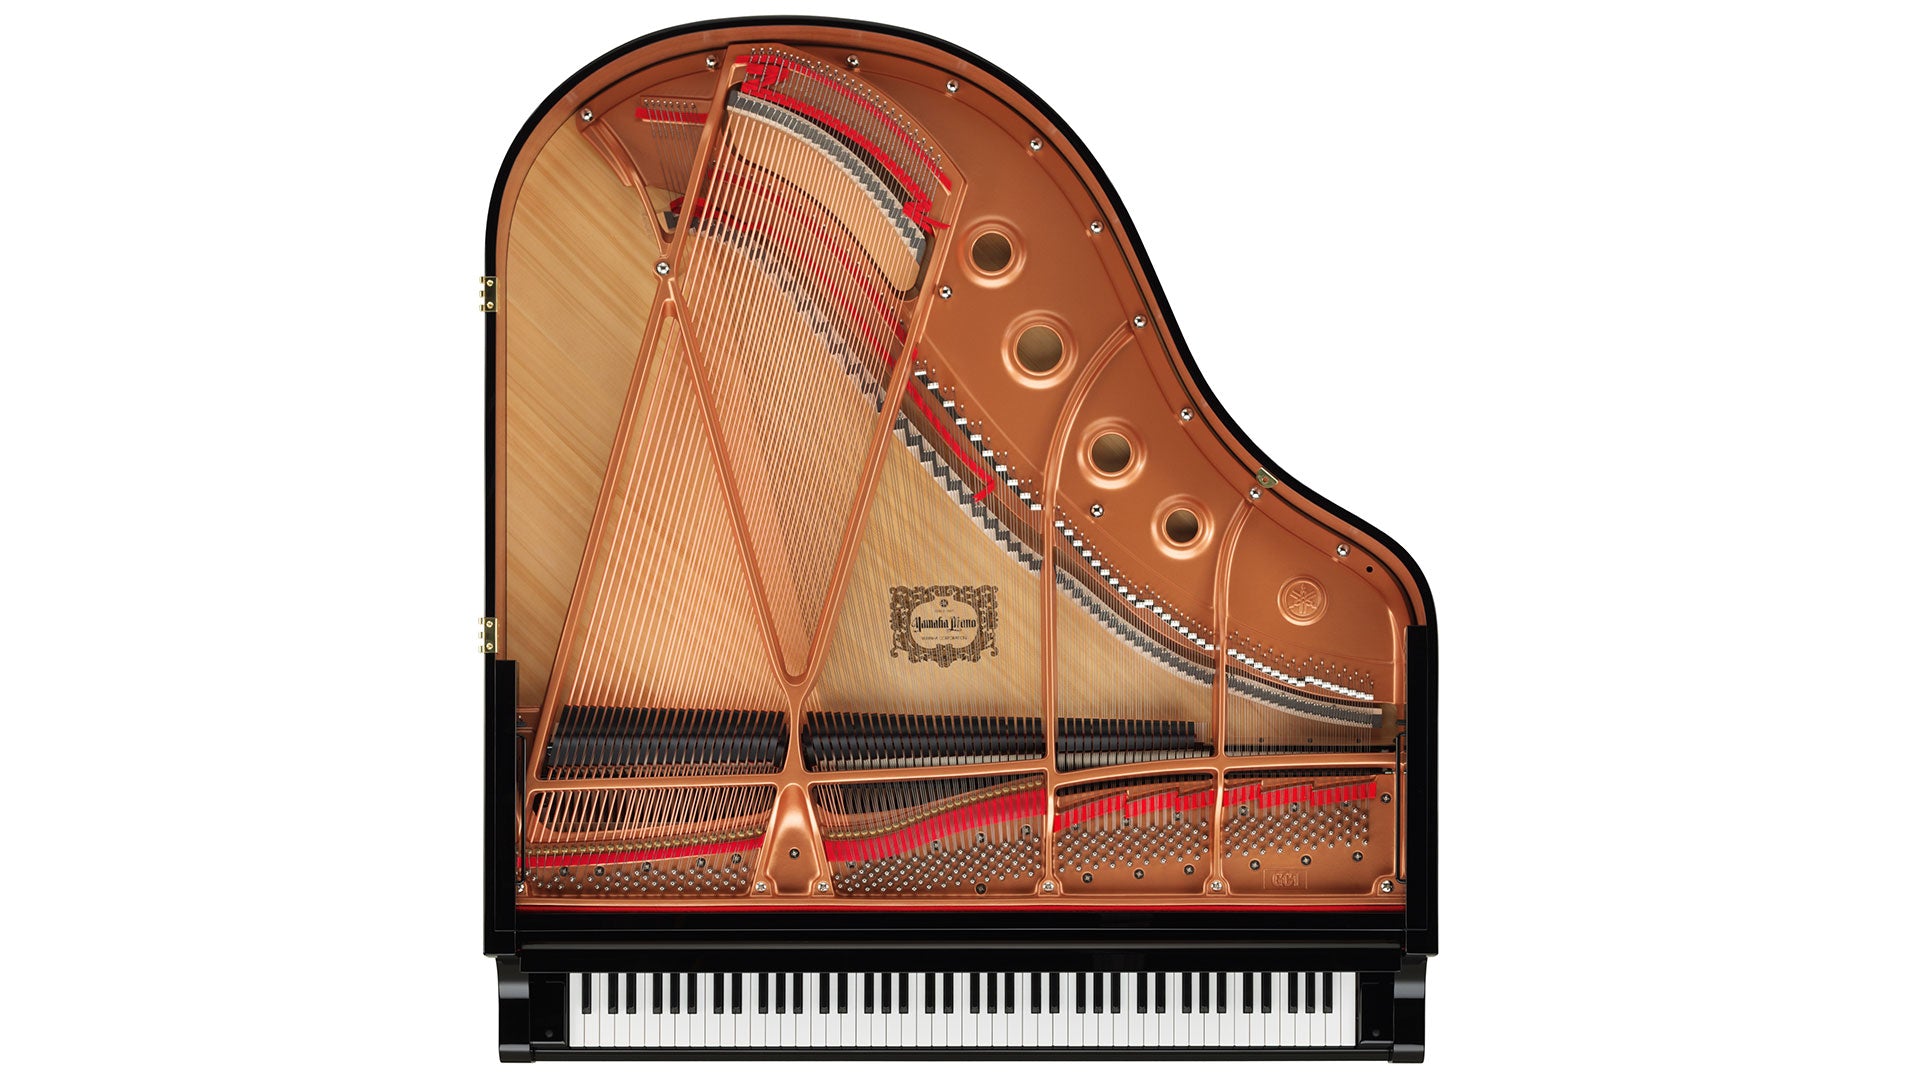 Yamaha DGC1 5'3" ENST Disklavier Baby Grand Piano in Ebony Polish